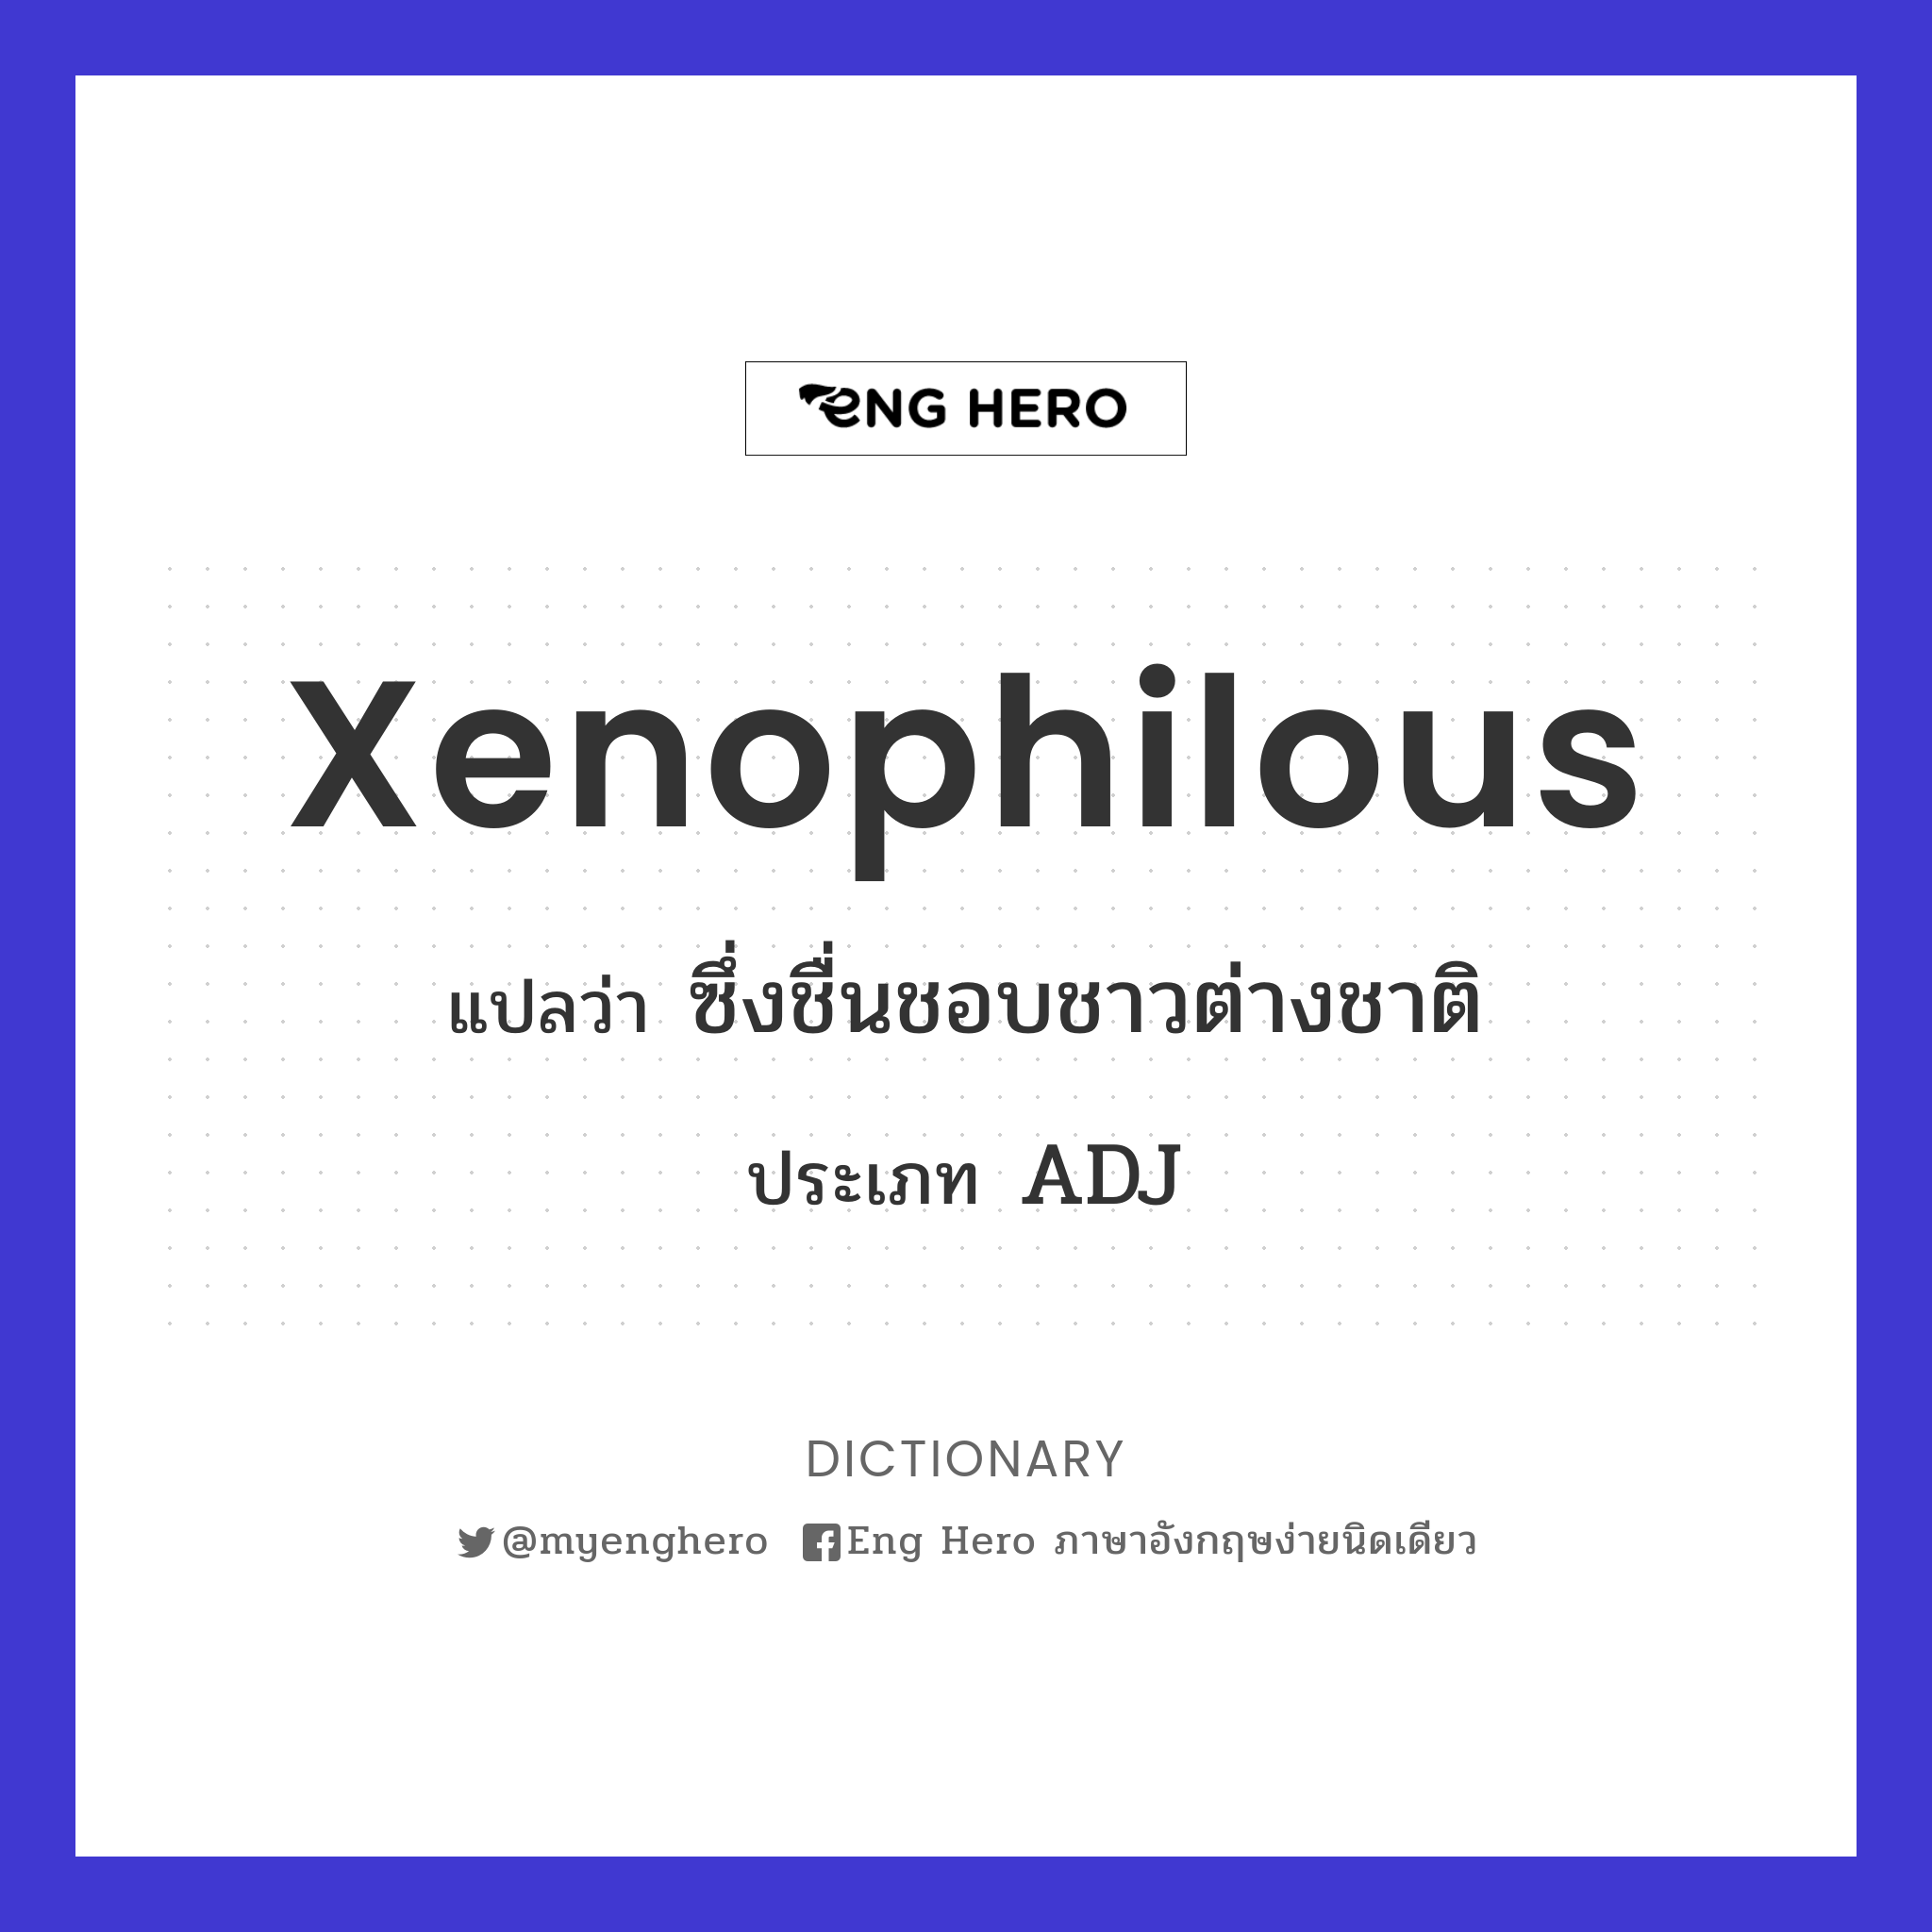 xenophilous